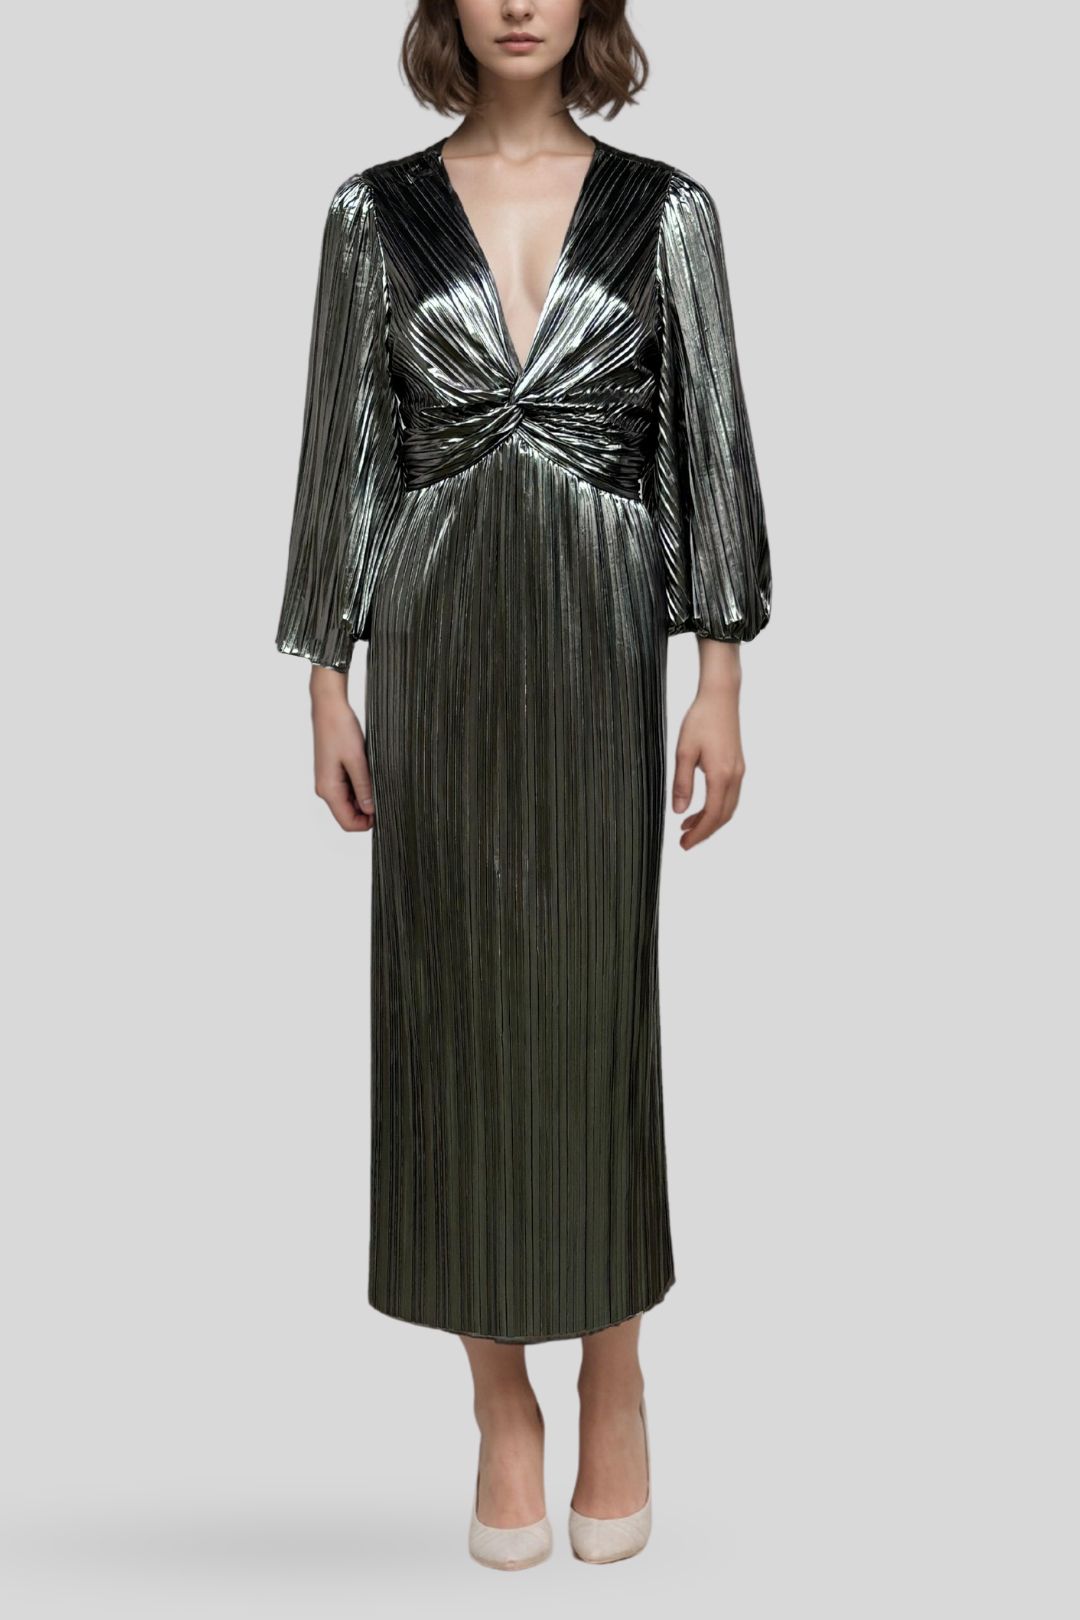 Y.A.S - Metallic Silver Plisse Long Dress